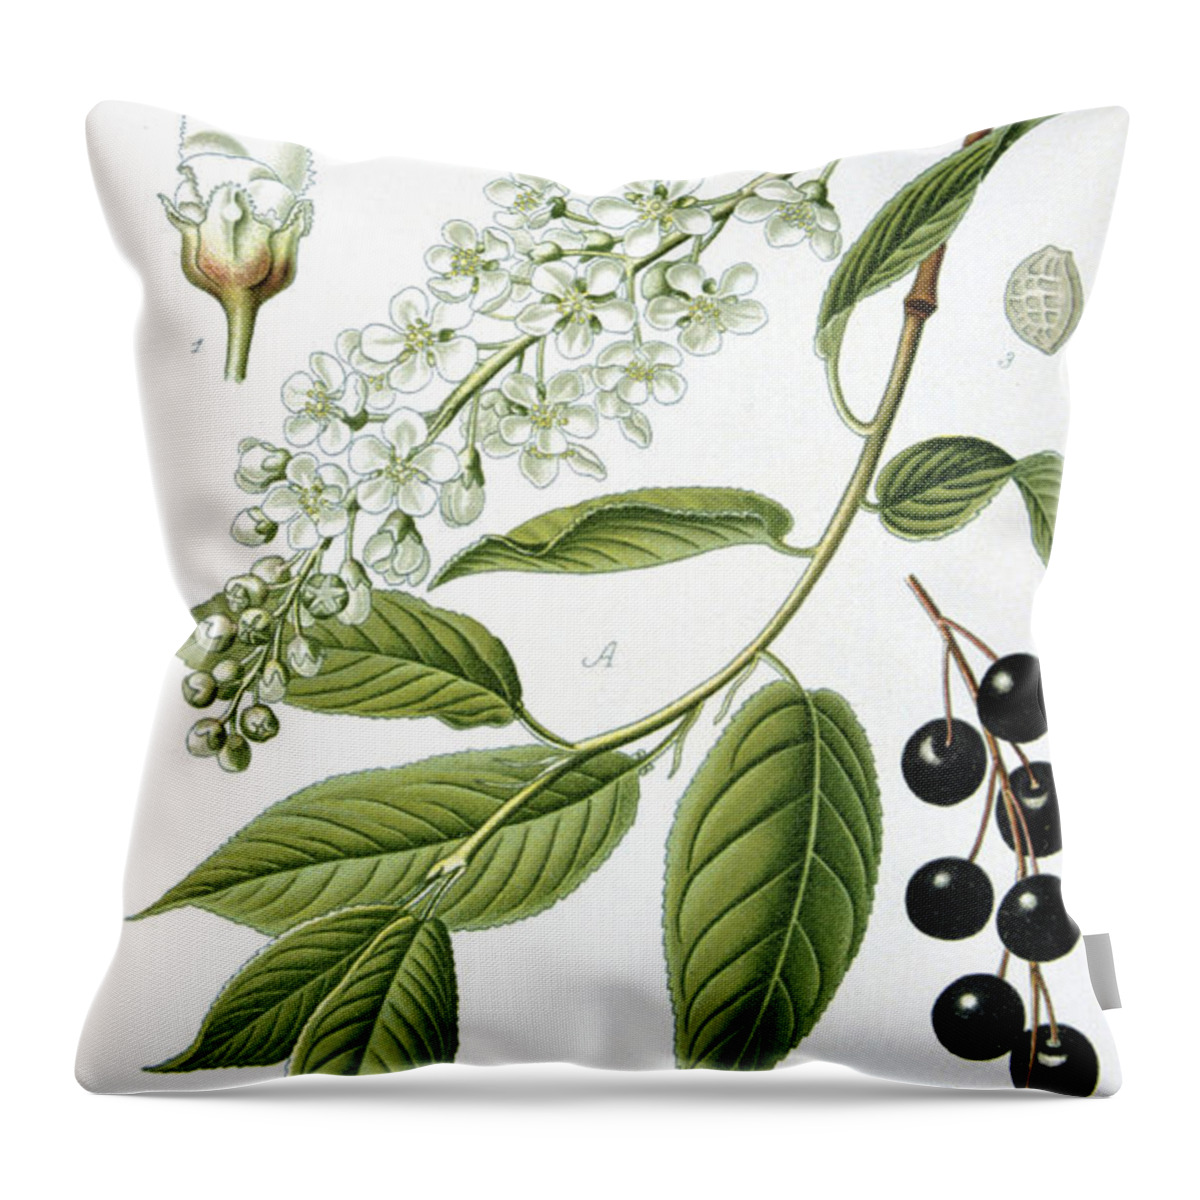 Bird Throw Pillow featuring the painting Bird Cherry Cerasus padus or Prunus padus by Anonymous